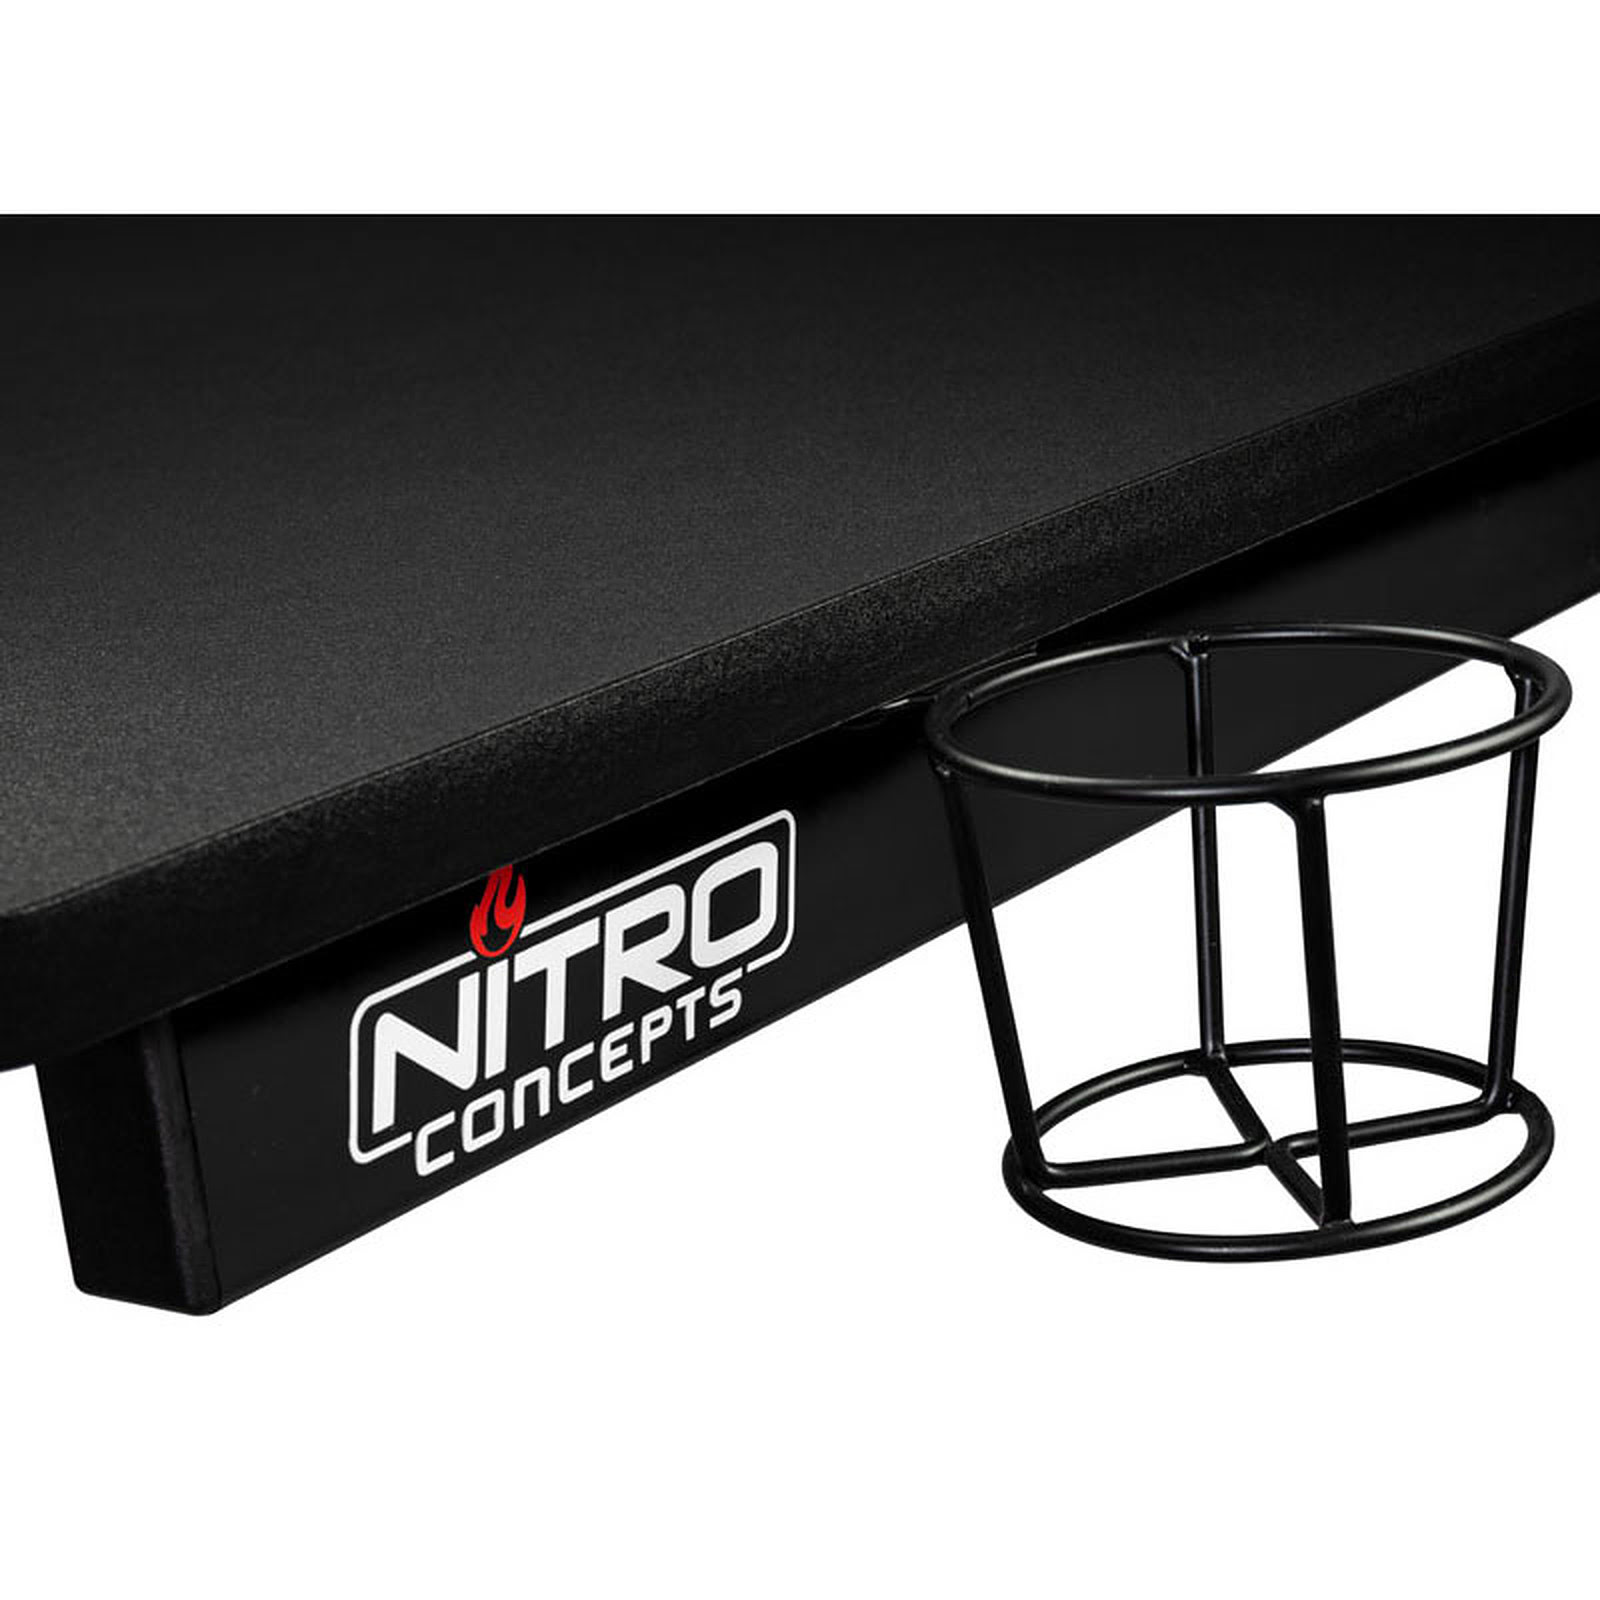 Nitro Concepts D12 Gaming Desk Noir Nc Gp Dk 009 Achat Vente Bureau Sur Cybertek Fr